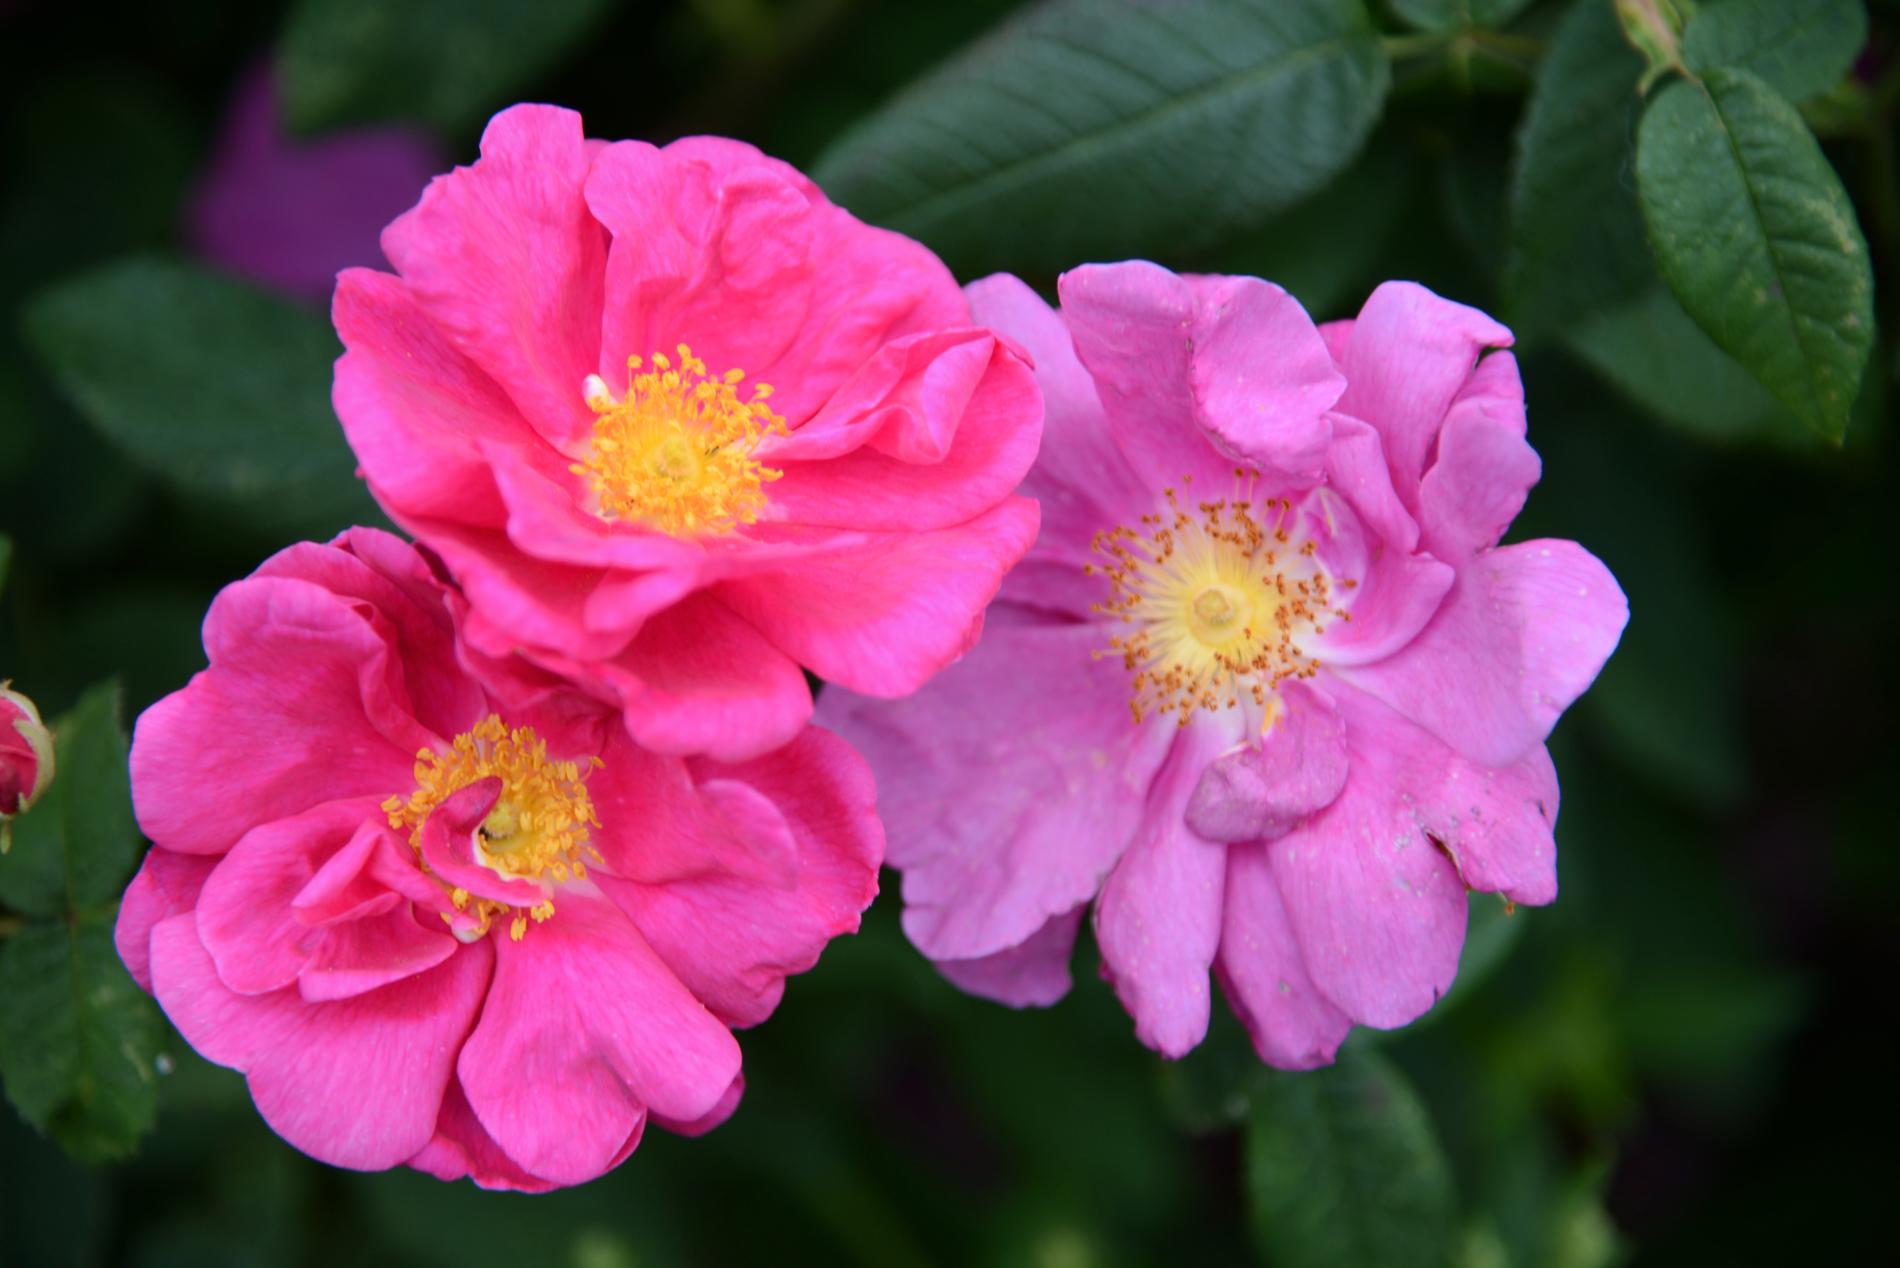 Den gammeldags rosen officinalis, eller apotekarrosen som den också kallas.